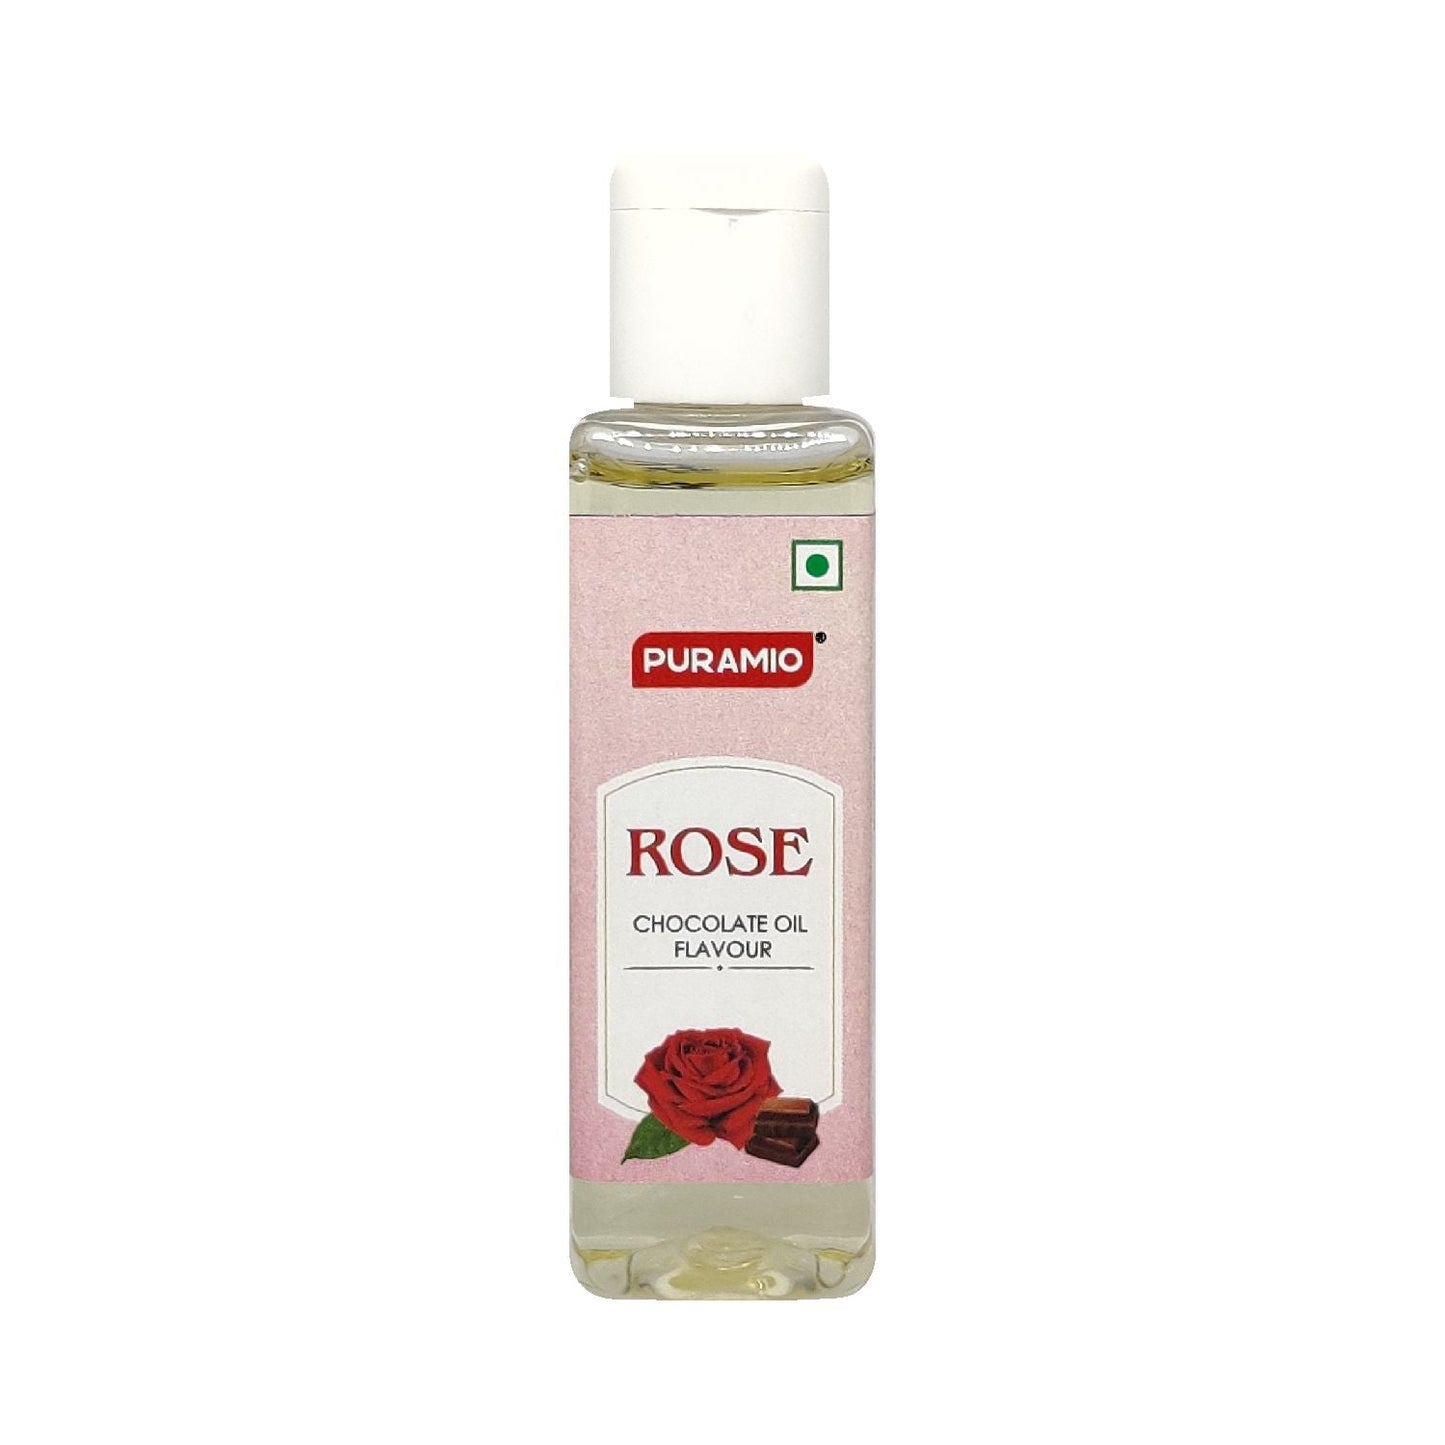 Puramio Chocolate Oil Flavour - Rose